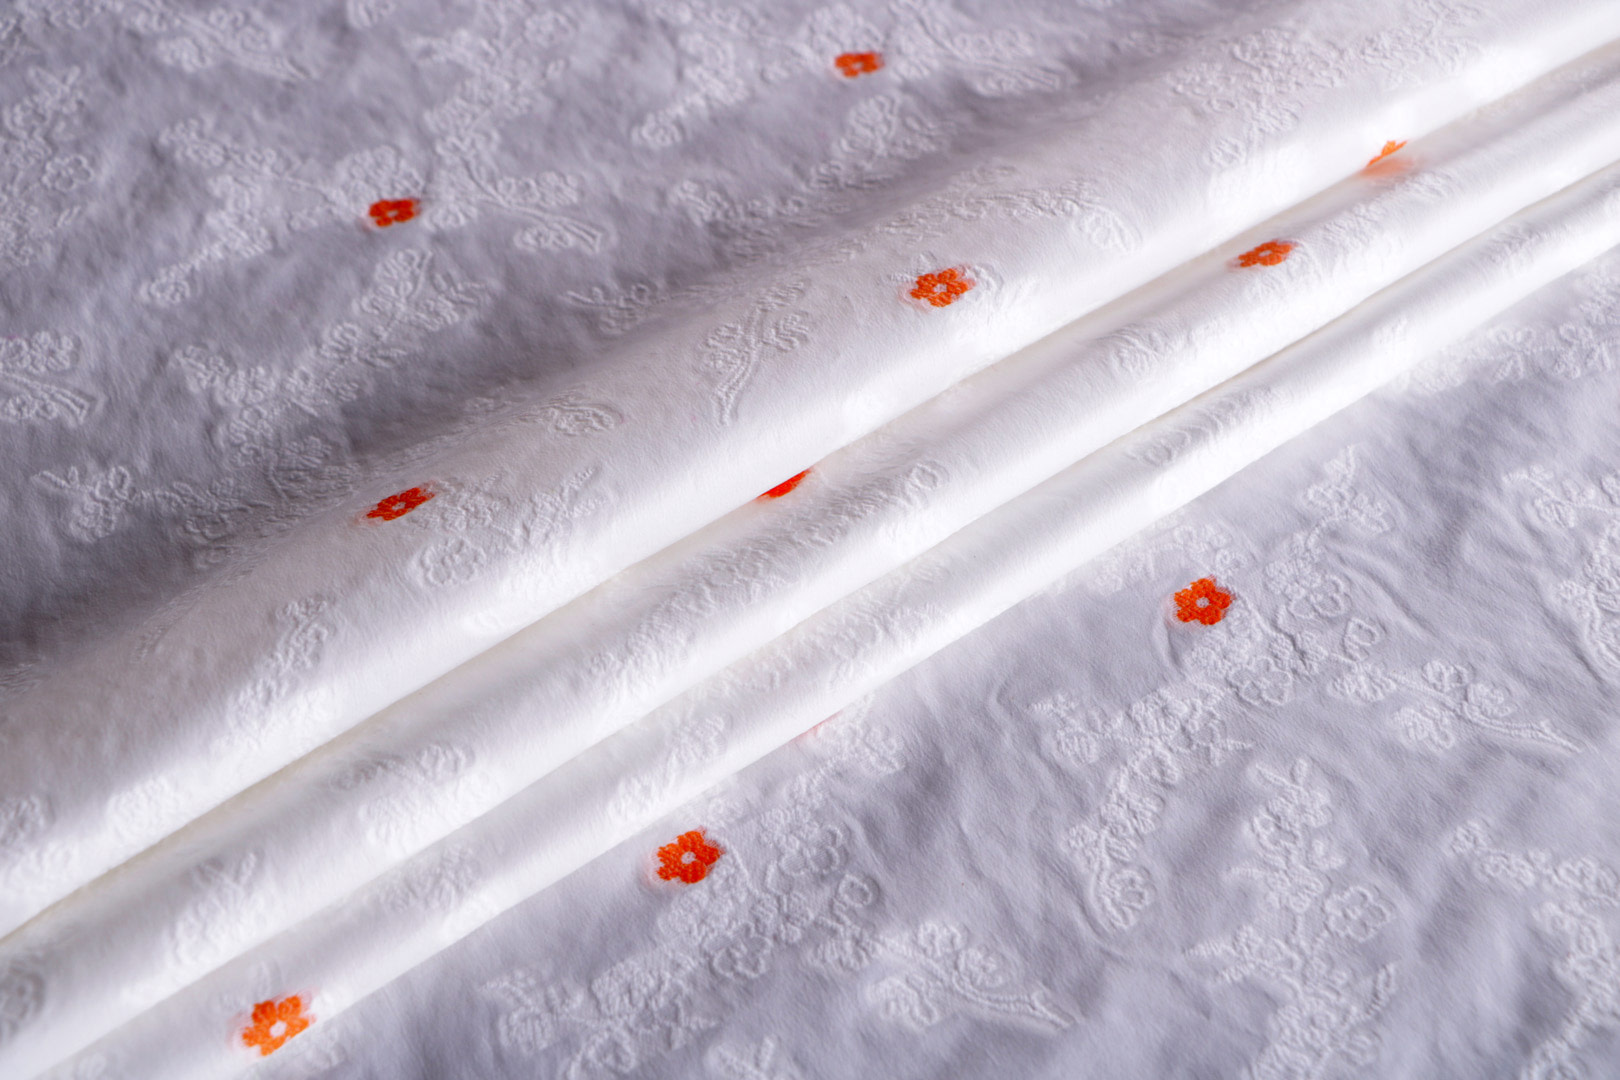 Tessuto Bianco in Cotone, Poliestere, Seta per Abbigliamento UN001365